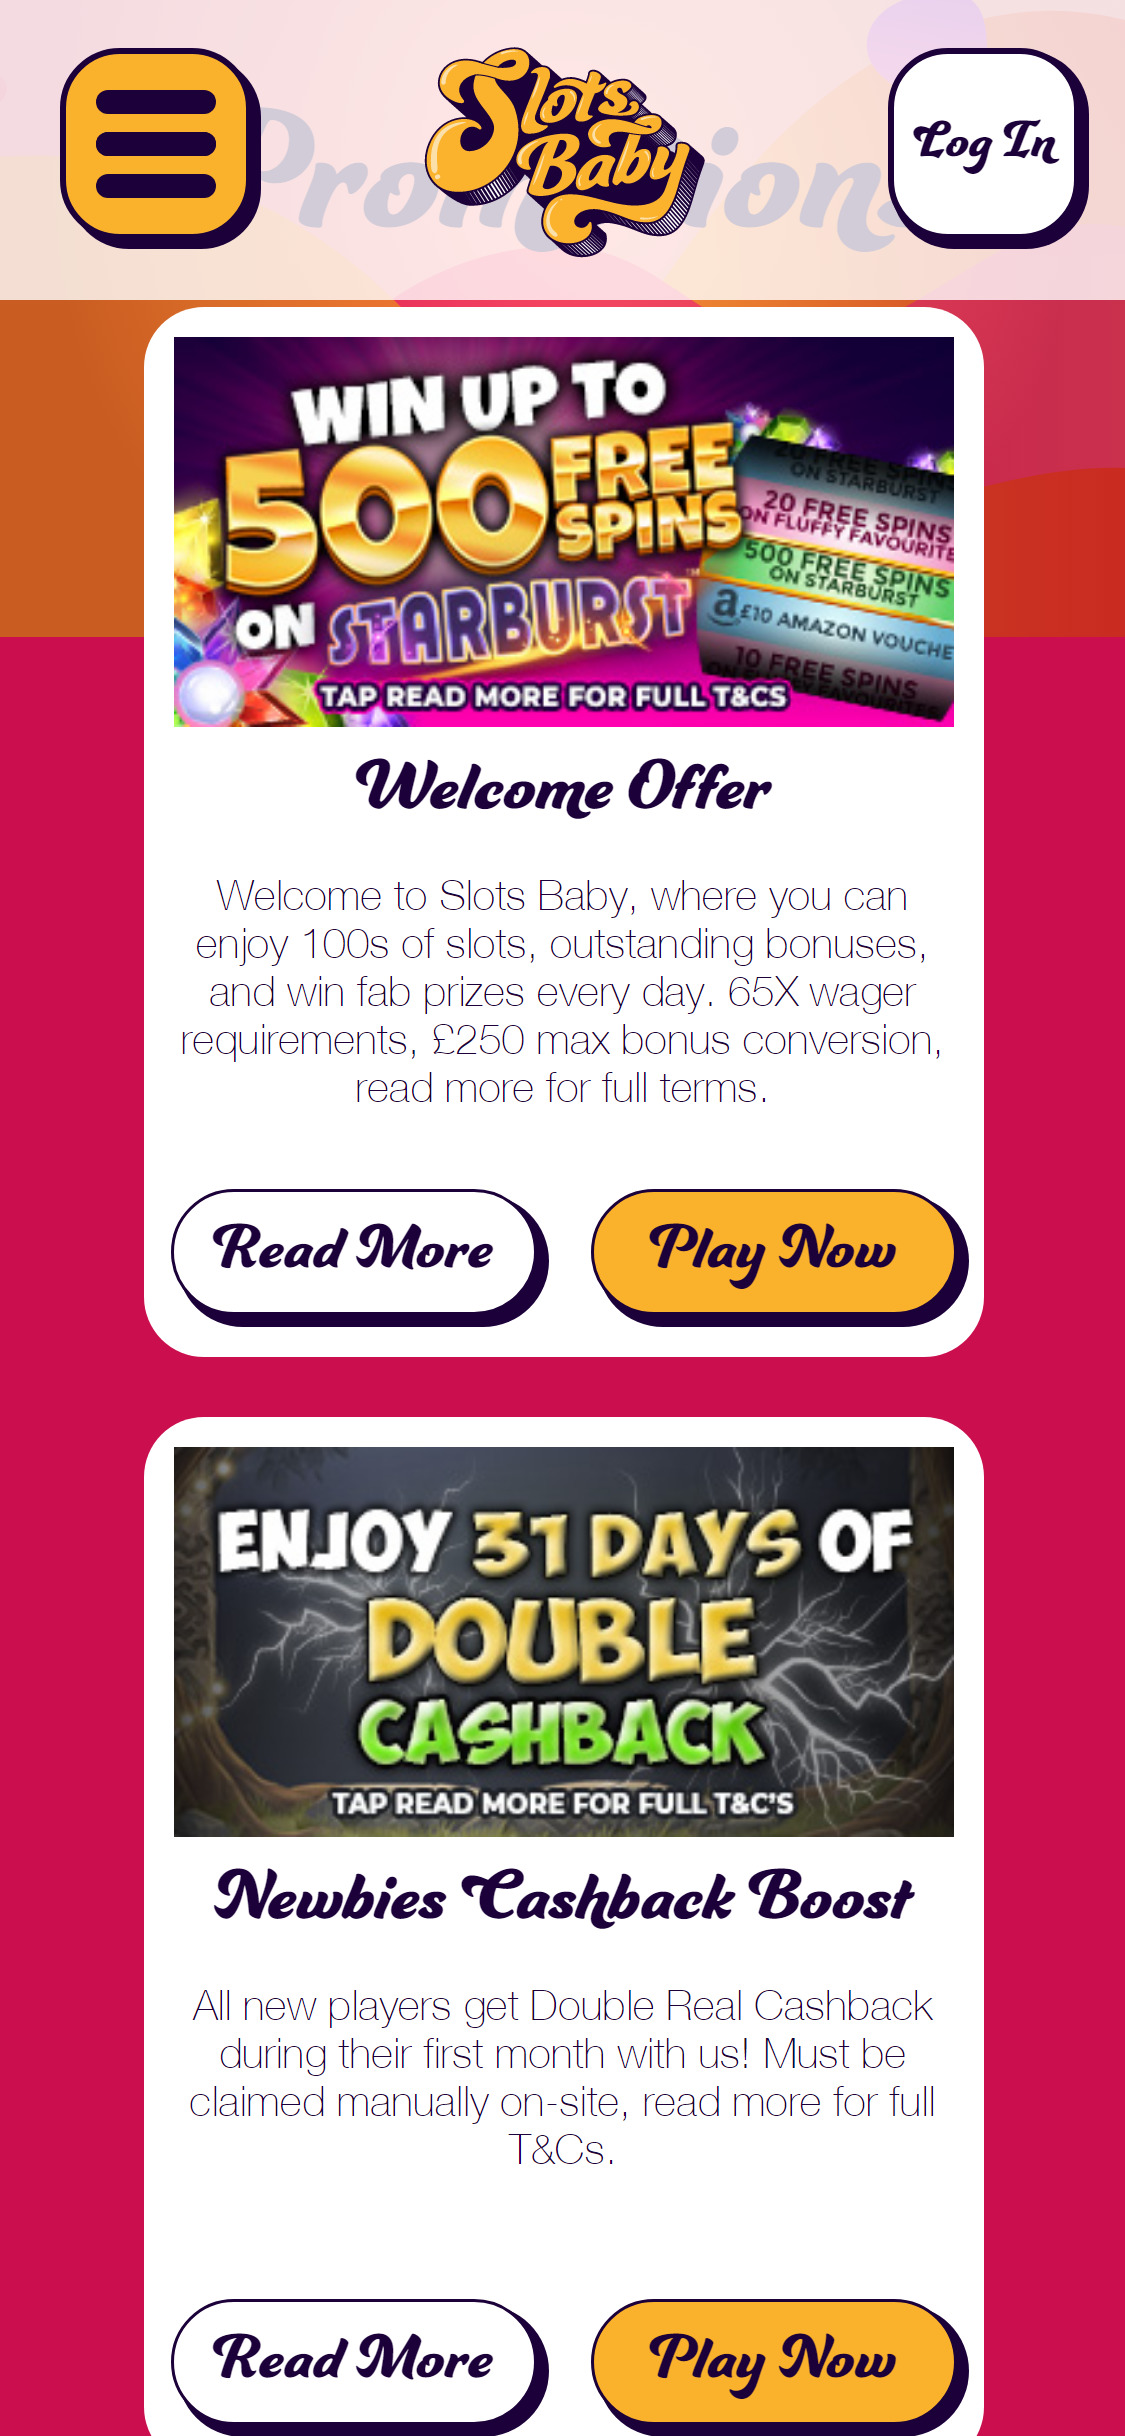 Slots Baby Casino Mobile No Deposit Bonus Review